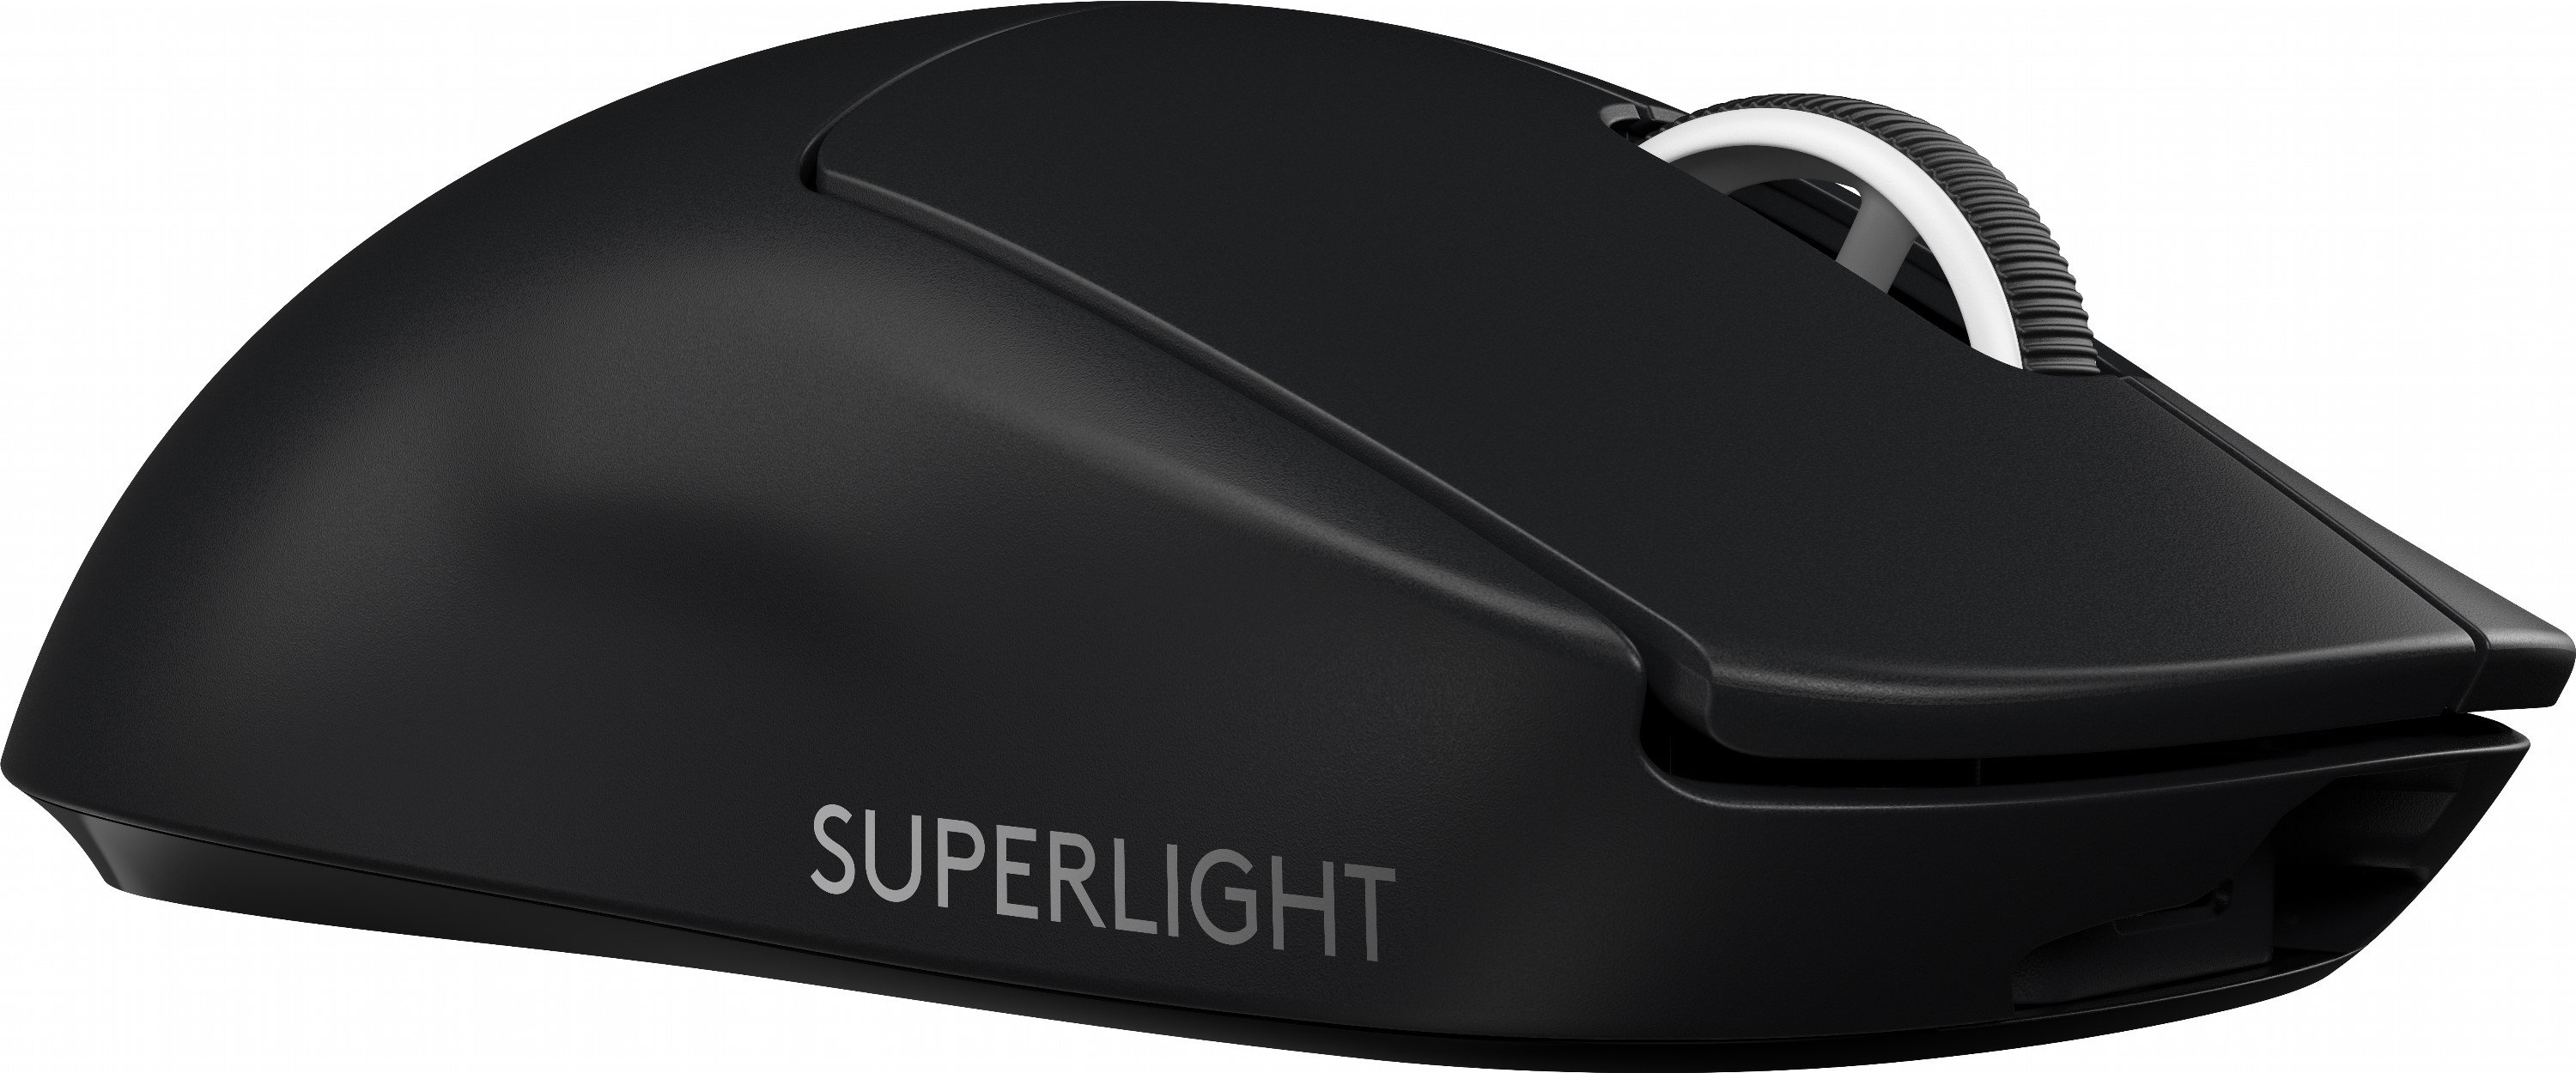 Игровая мышь logitech g pro superlight. Logitech g Pro x Superlight. Logitech g Pro Wireless Superlight. Мышь Logitech 910-005880. Мышь Logitech g Pro x Superlight.